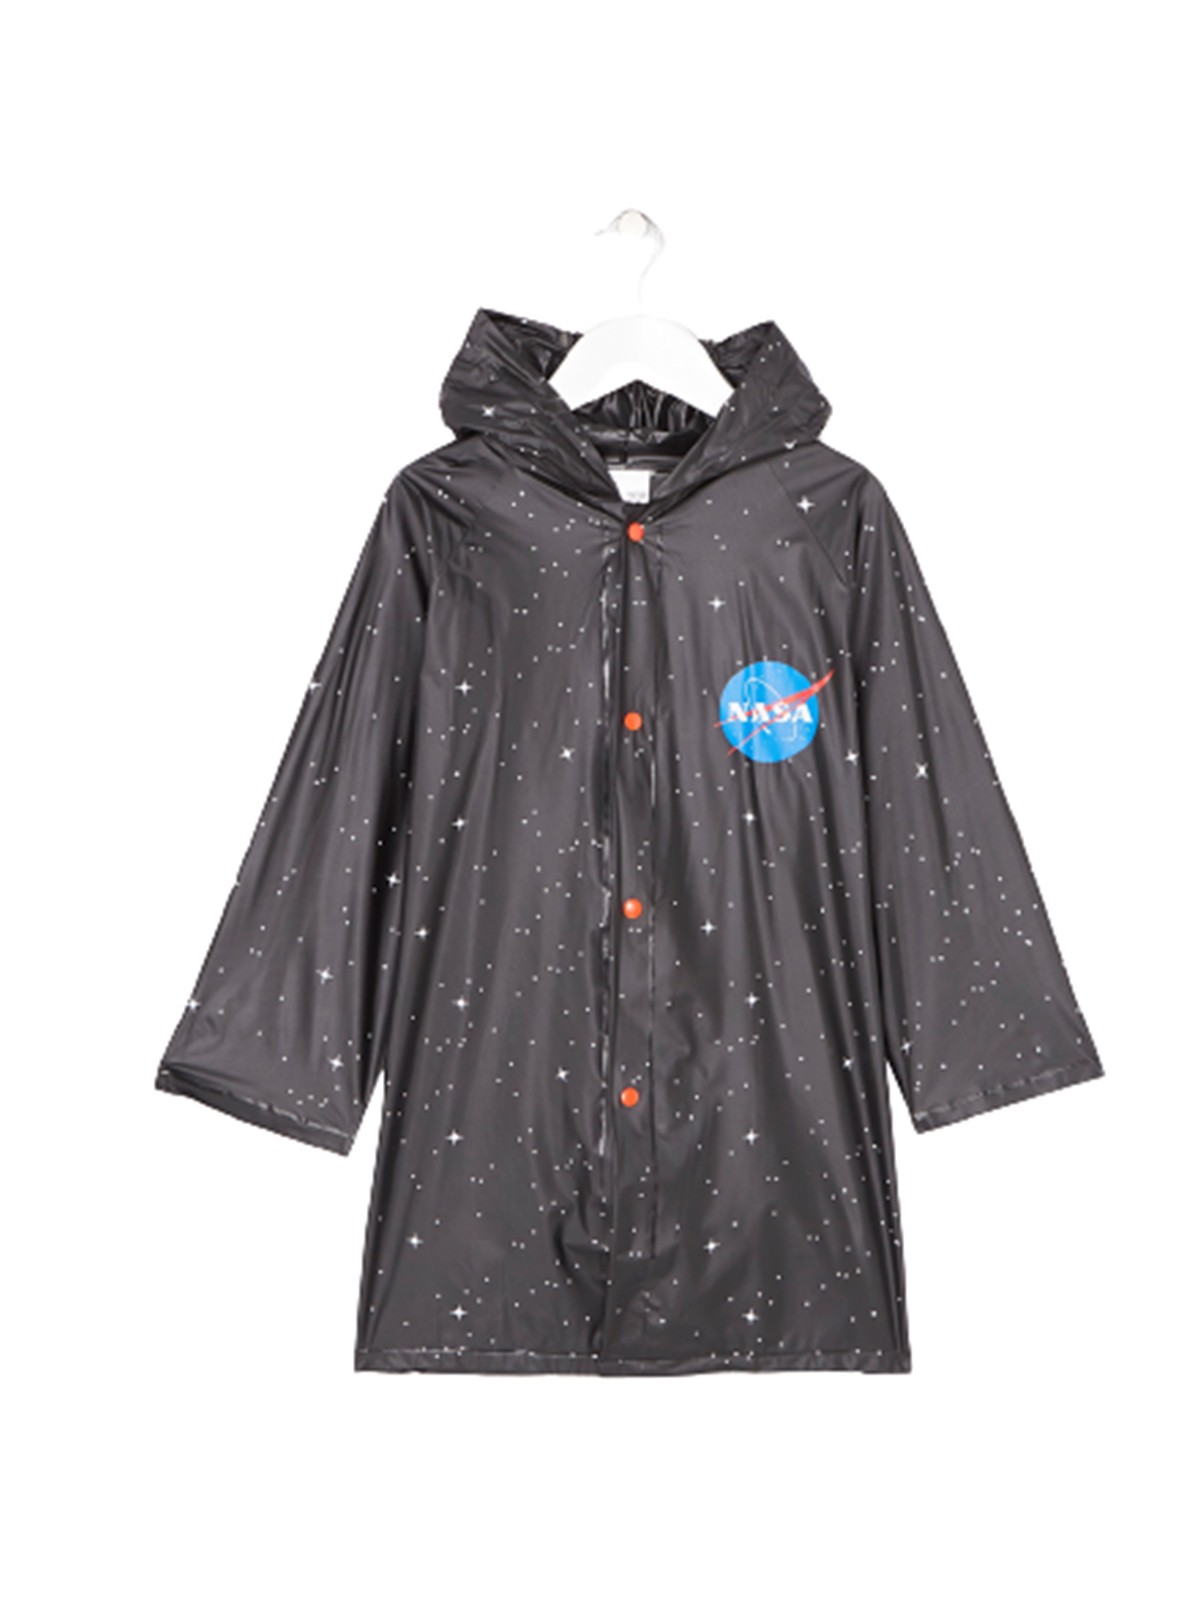 Nasa Rain raincoat